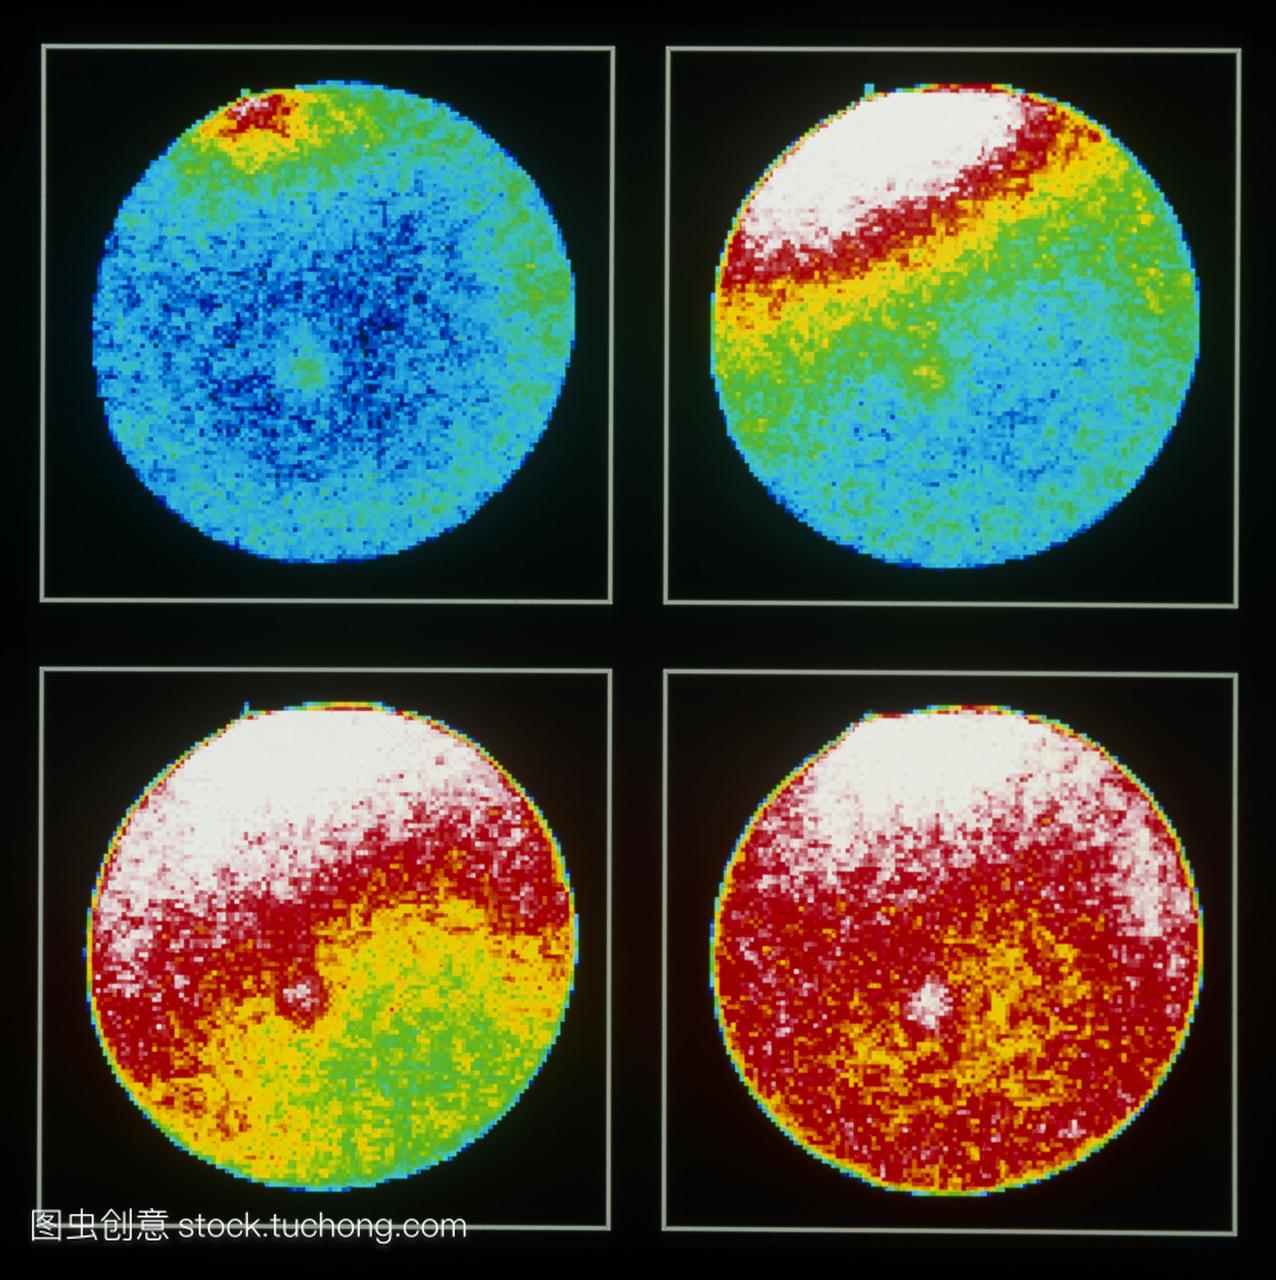 受精钙波4张图片。在受精过程中,一个精子左上